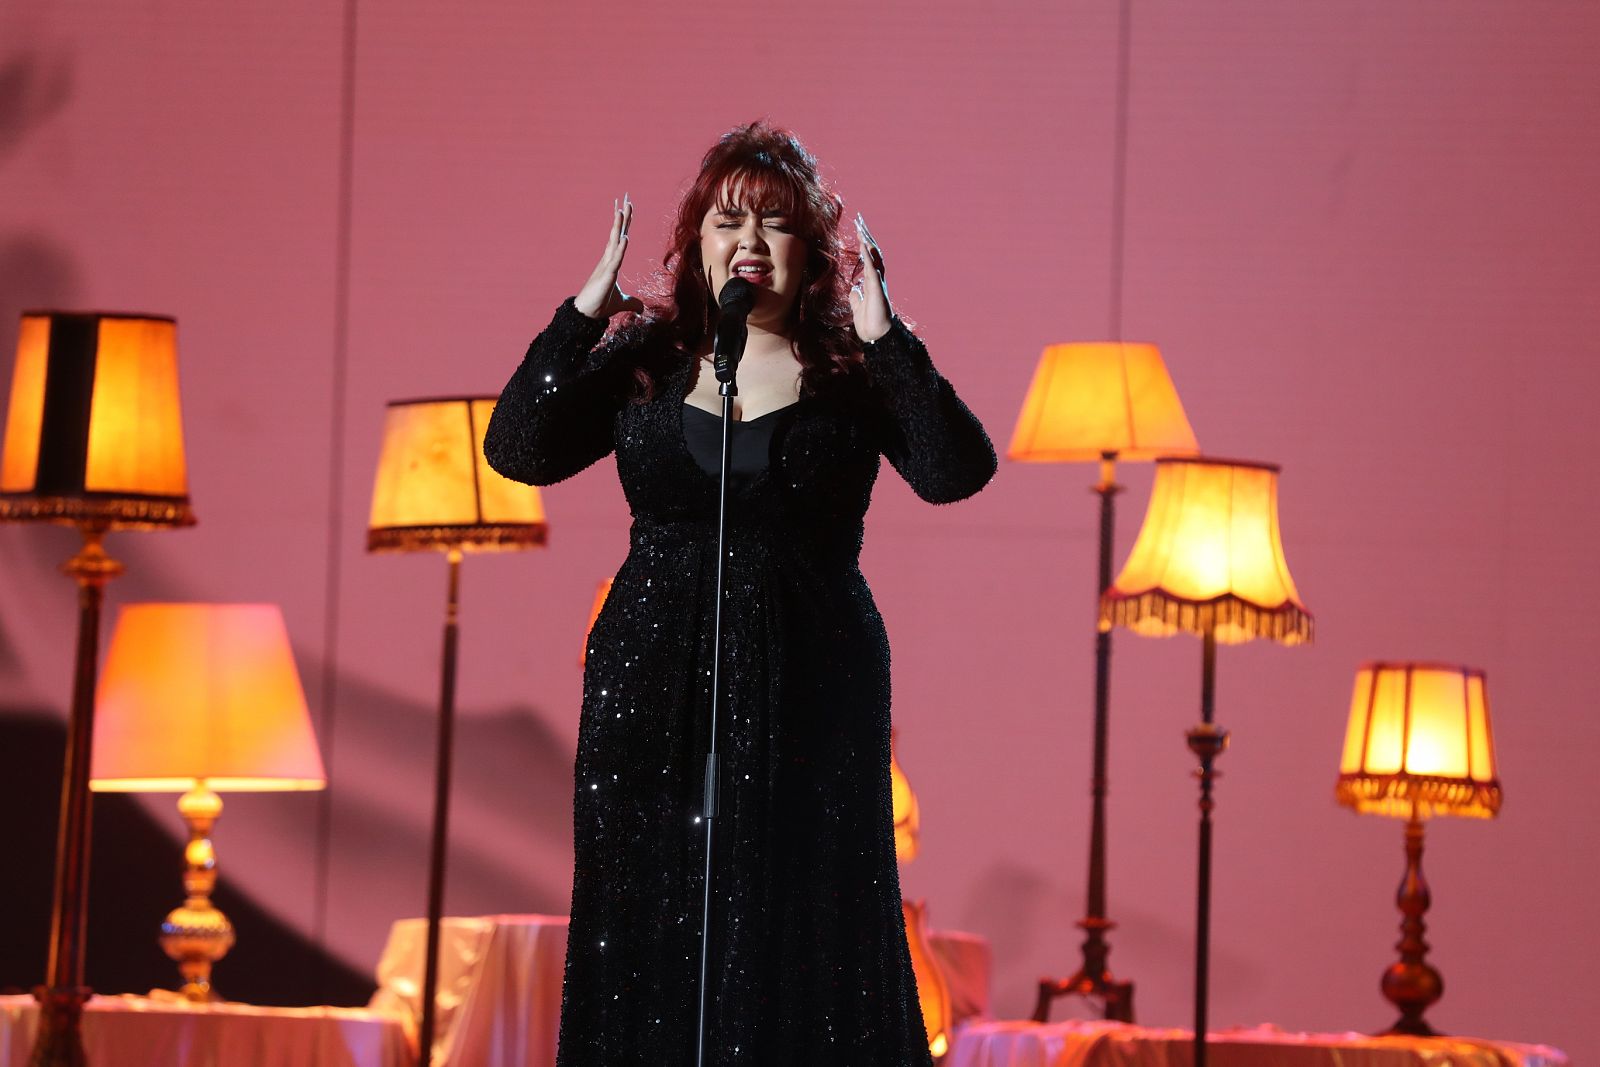 Ariadna canta "Al santo equivocado" en la Gala 7 de Operación Triunfo 2020